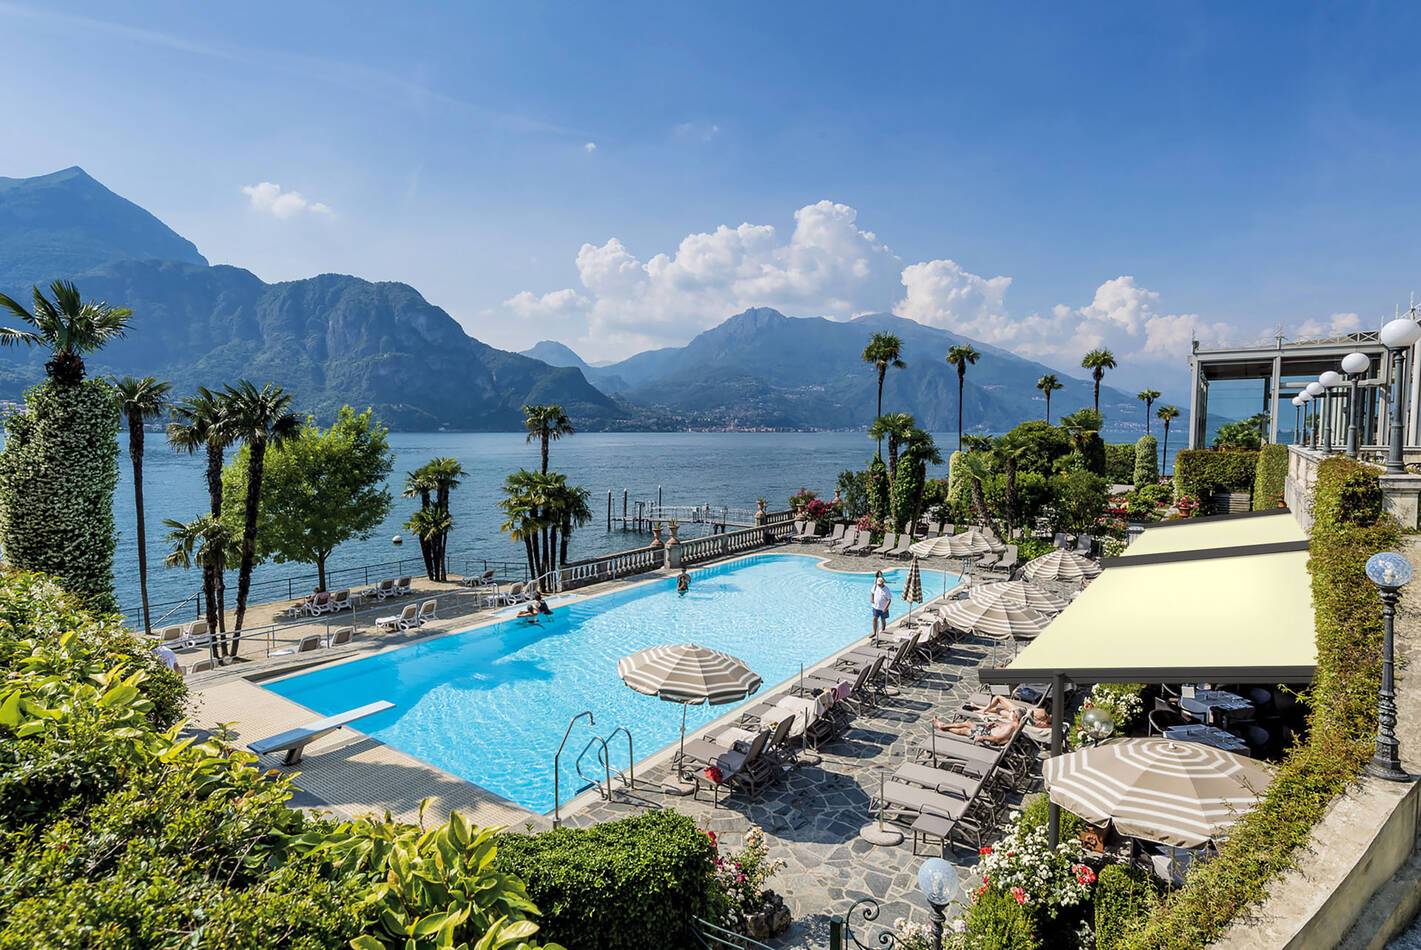 Grand Hotel Villa Serbelloni Lac Come Piscine Vue